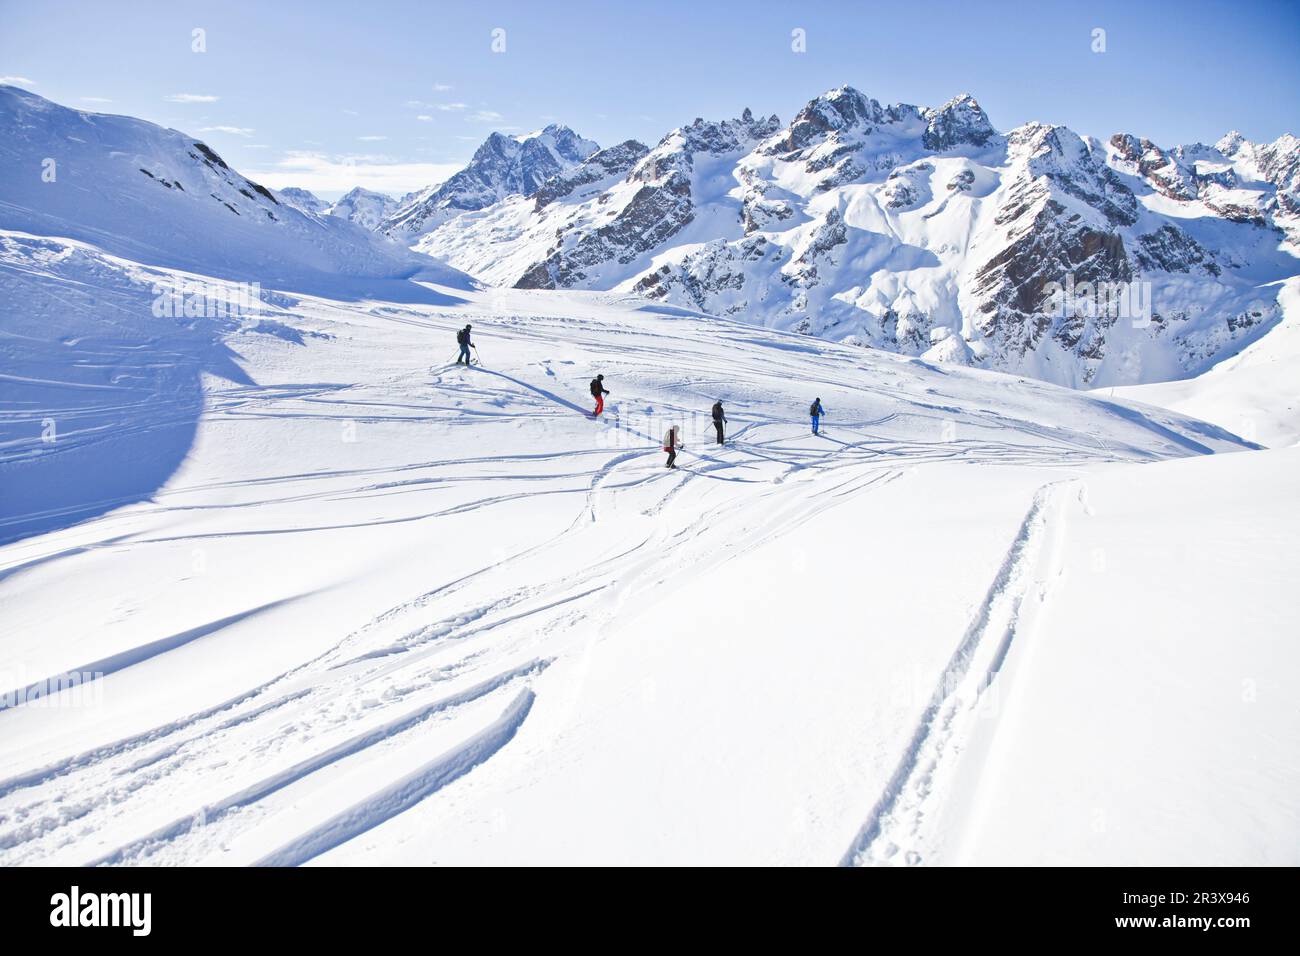 Alpes françaises, serre-Chevalier : groupe de skieurs accompagnés d'un instructeur de ski hors piste. Pratique de la randonnée (ski de fond) et hors-piste Banque D'Images